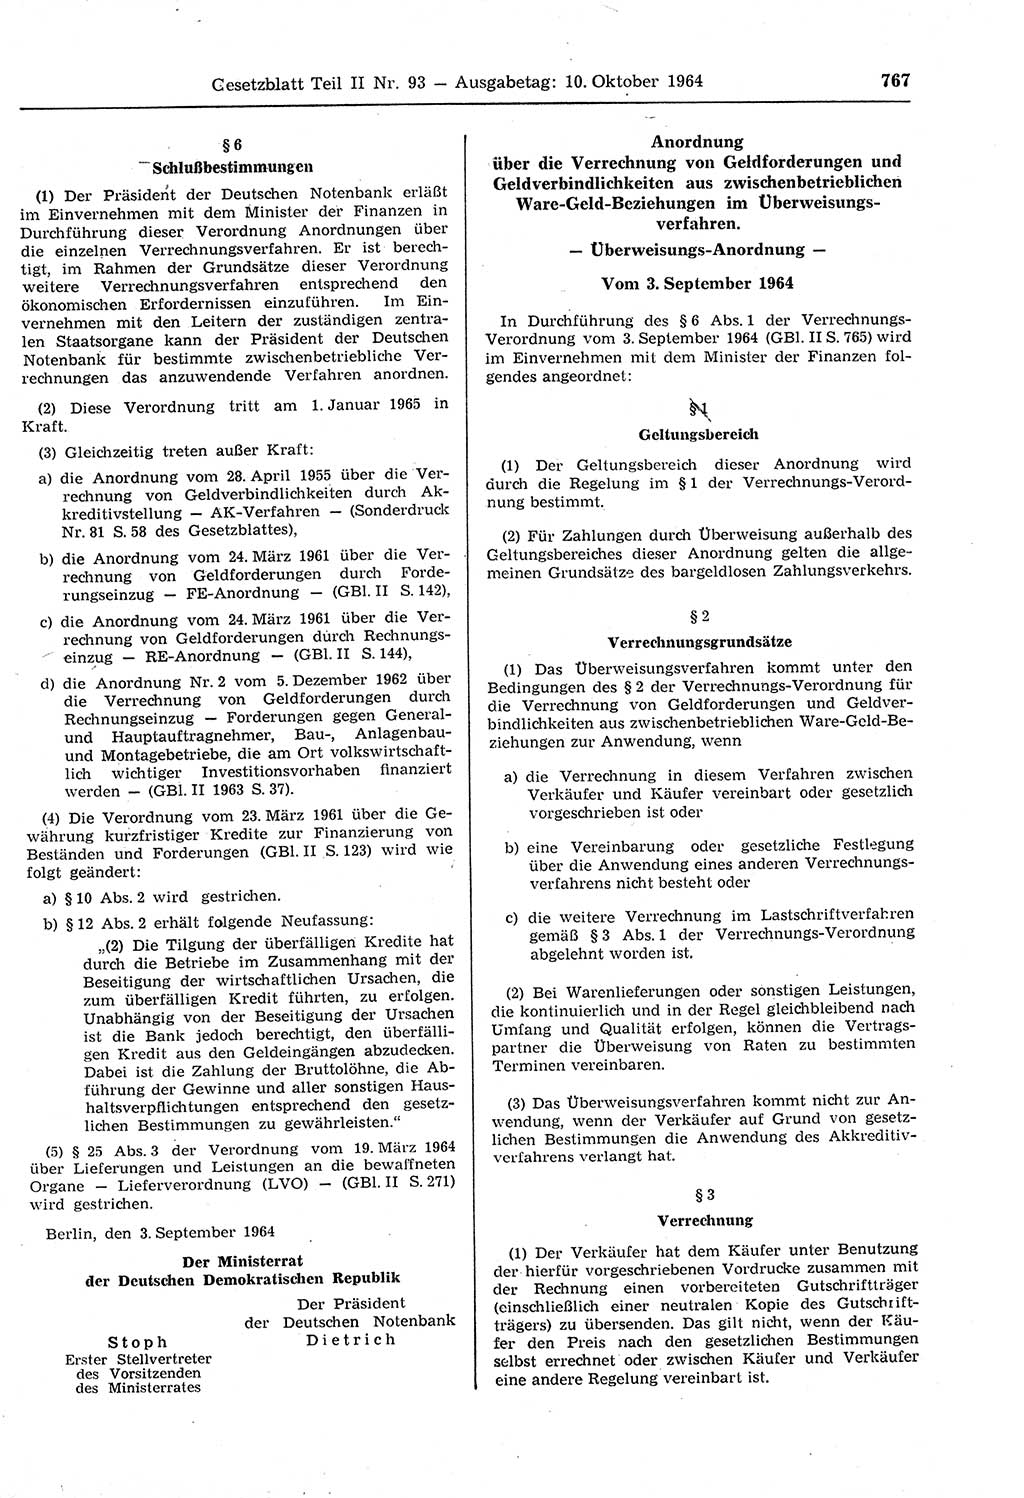 Gesetzblatt (GBl.) der Deutschen Demokratischen Republik (DDR) Teil ⅠⅠ 1964, Seite 767 (GBl. DDR ⅠⅠ 1964, S. 767)